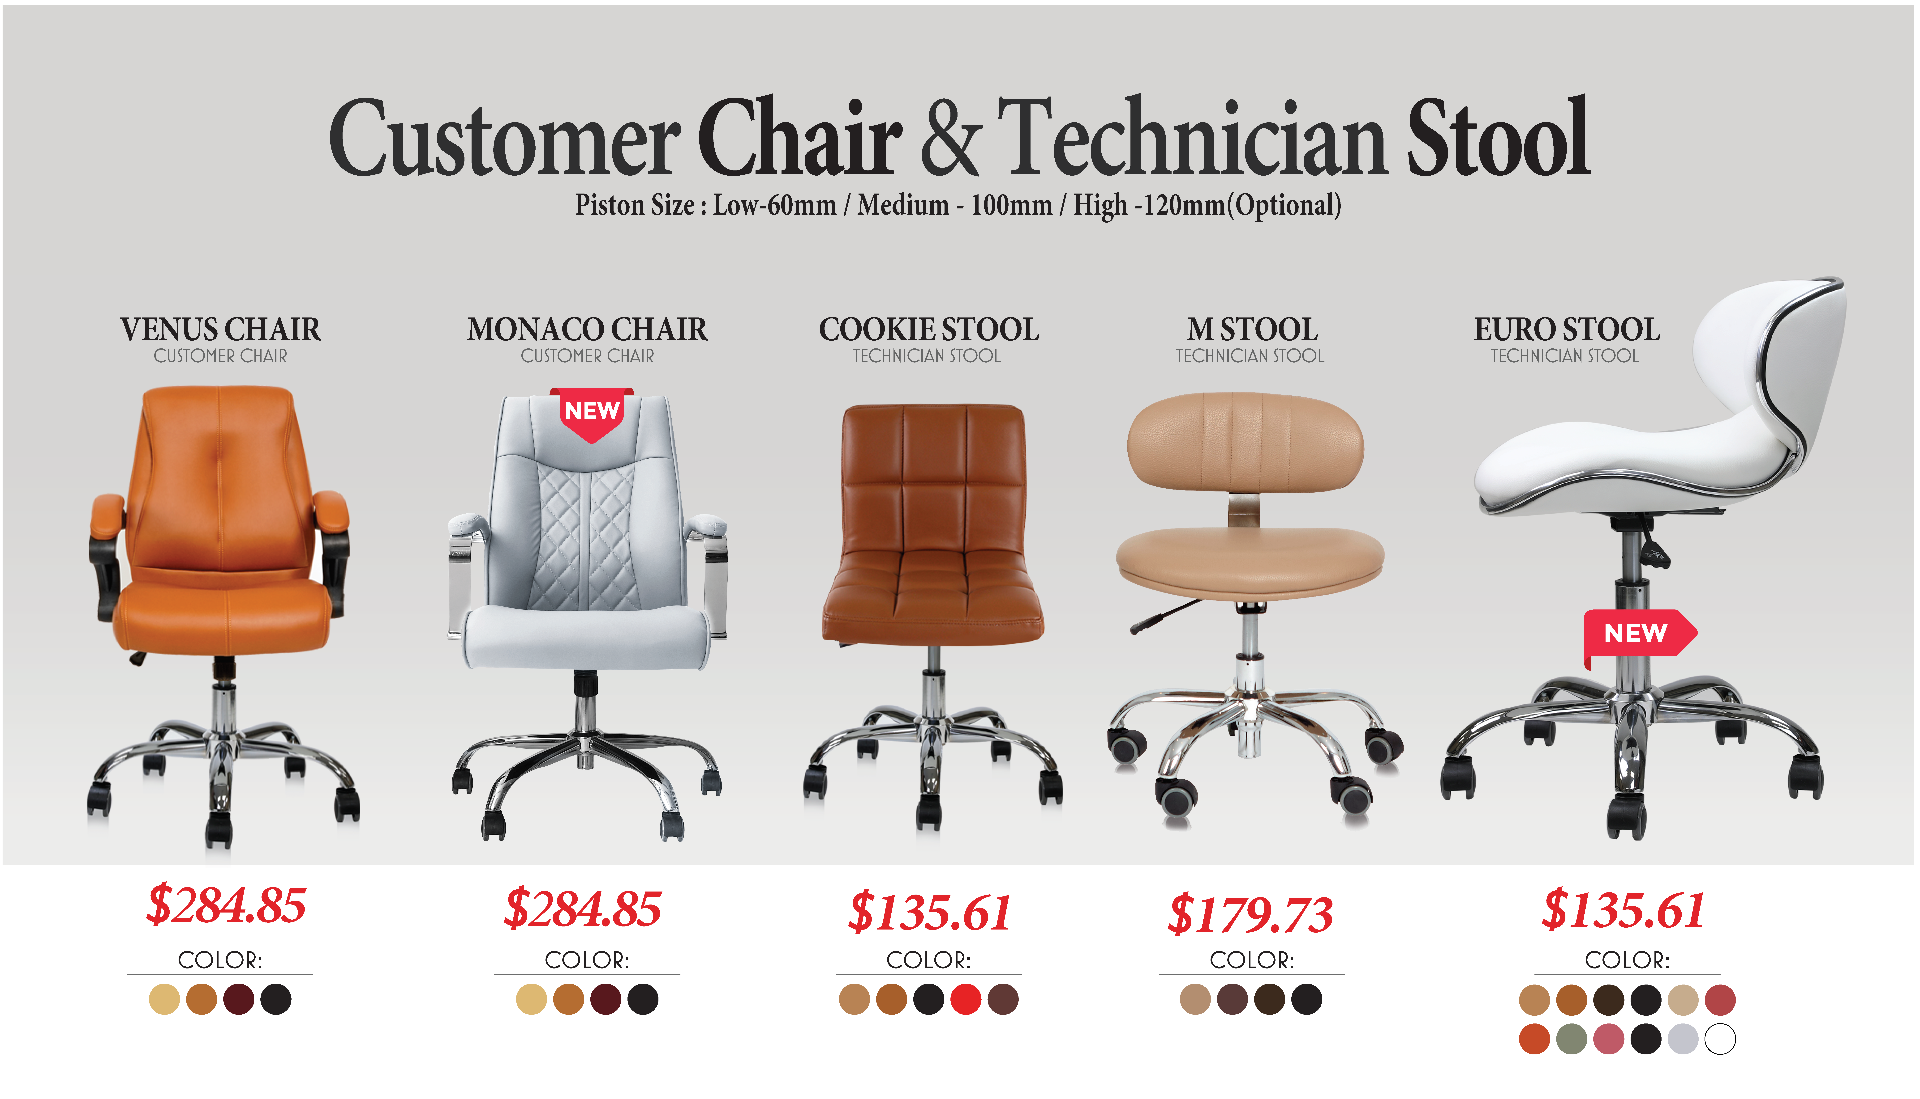 Techincian and Customer chair